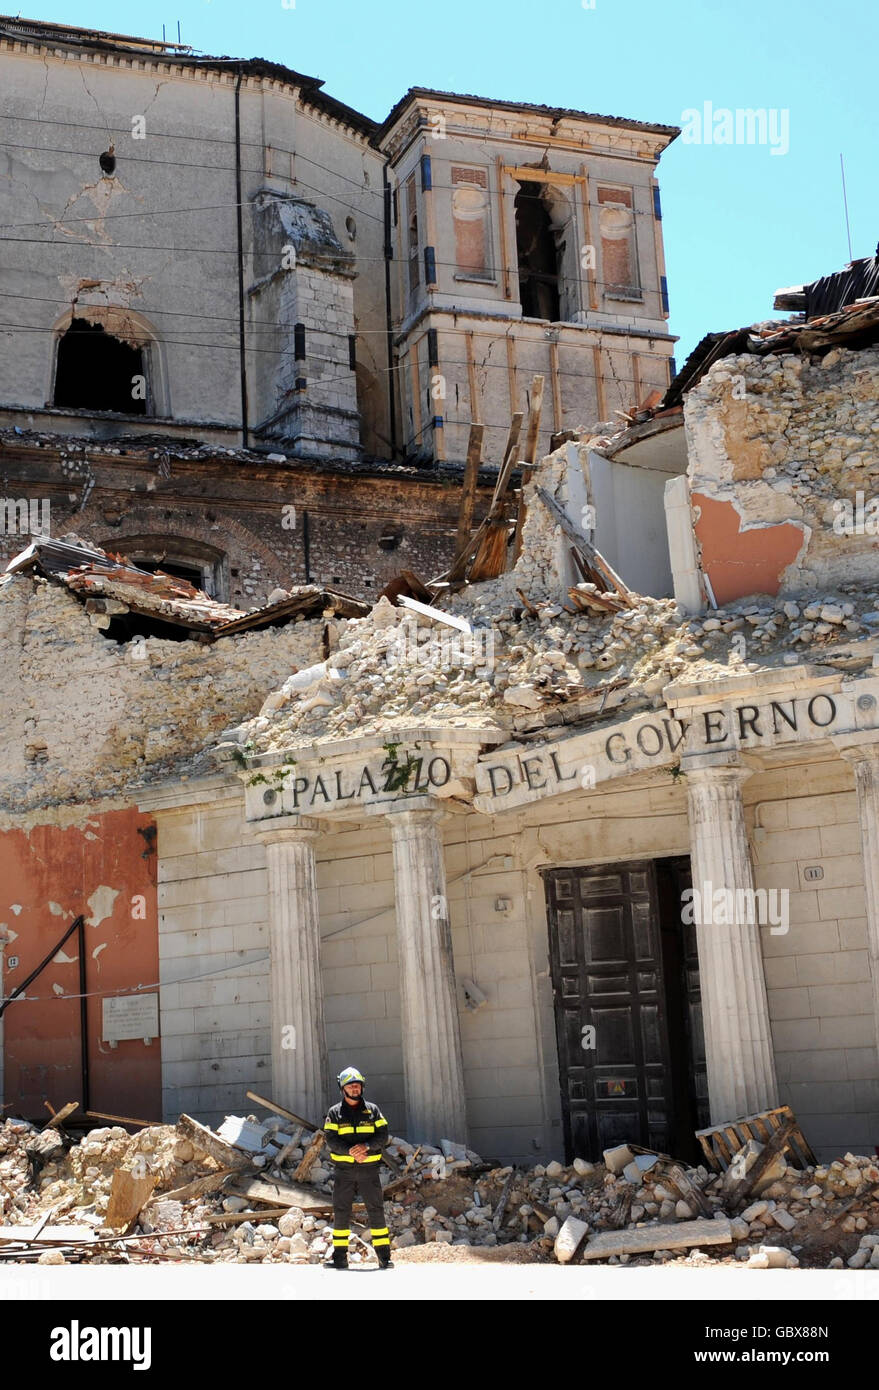 Certains des dommages causés par le tremblement de terre à la ville de l'Aquila, vus lors d'une visite de la femme du Premier ministre Gordon Brown, Sarah, au cours du Sommet du G8 en Italie. Banque D'Images